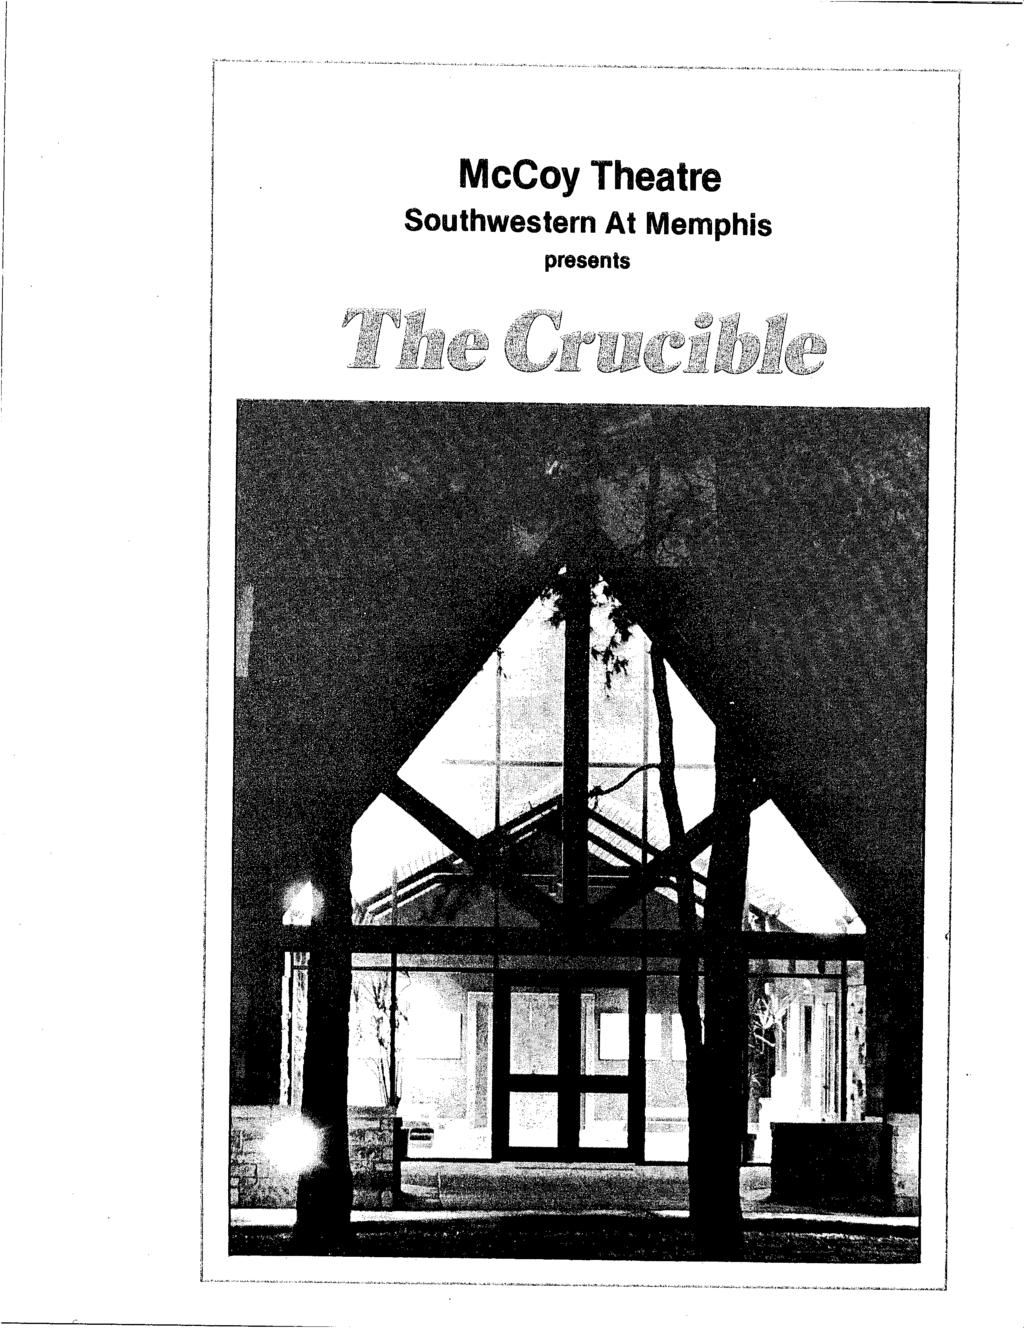 McCoy Theatre